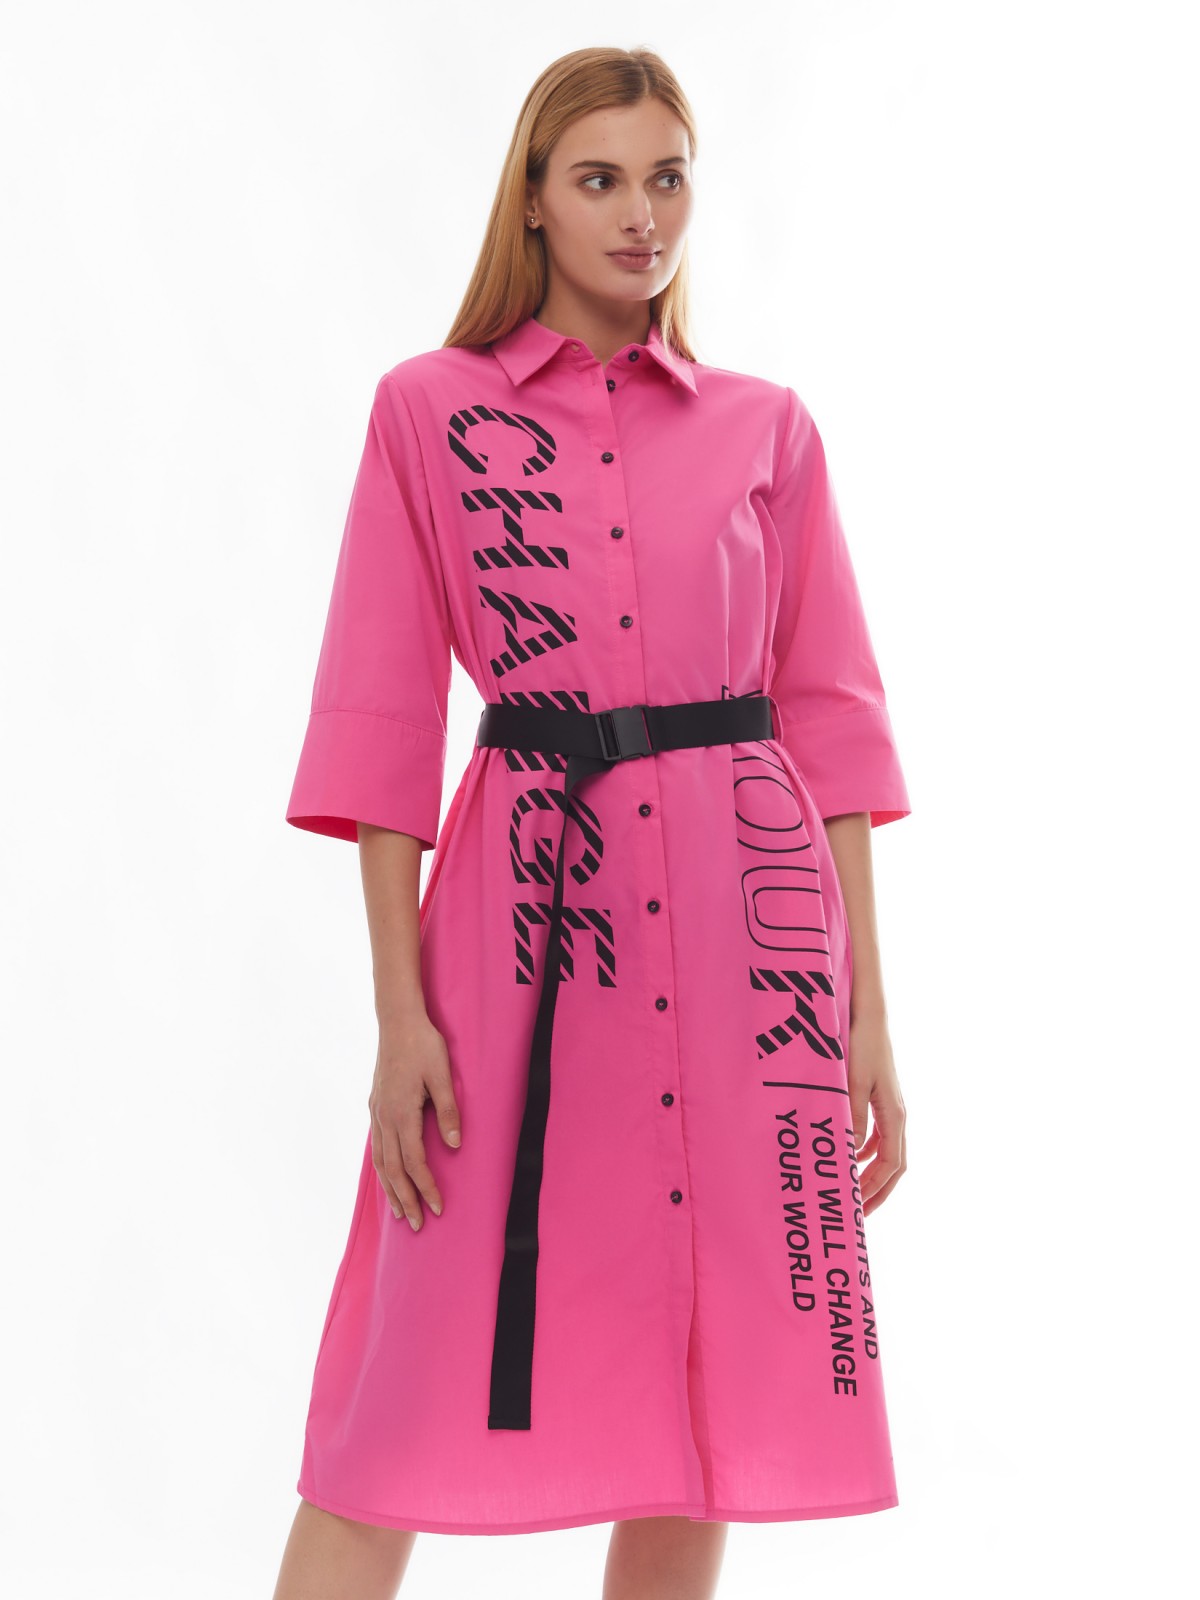 Платье-рубашка длины миди с надписями и ремнём zolla 024138240443, цвет фуксия, размер XS